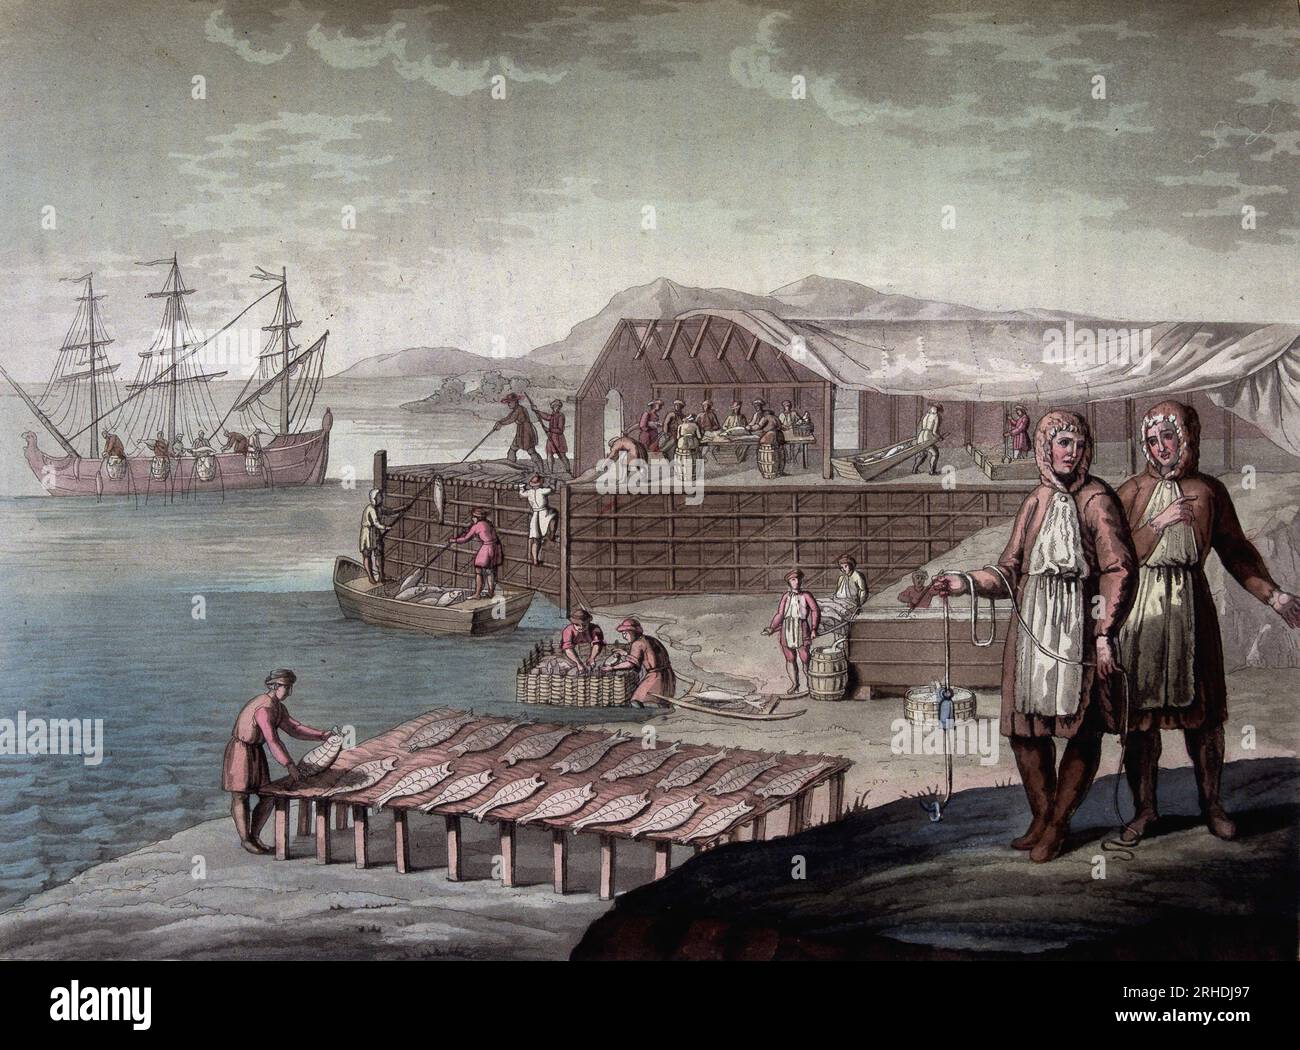 pêche de la morue faite par les habitants de Terre-Neuve - in 'Le costume ancien et modern' par Ferrario, 1819-20 Stockfoto